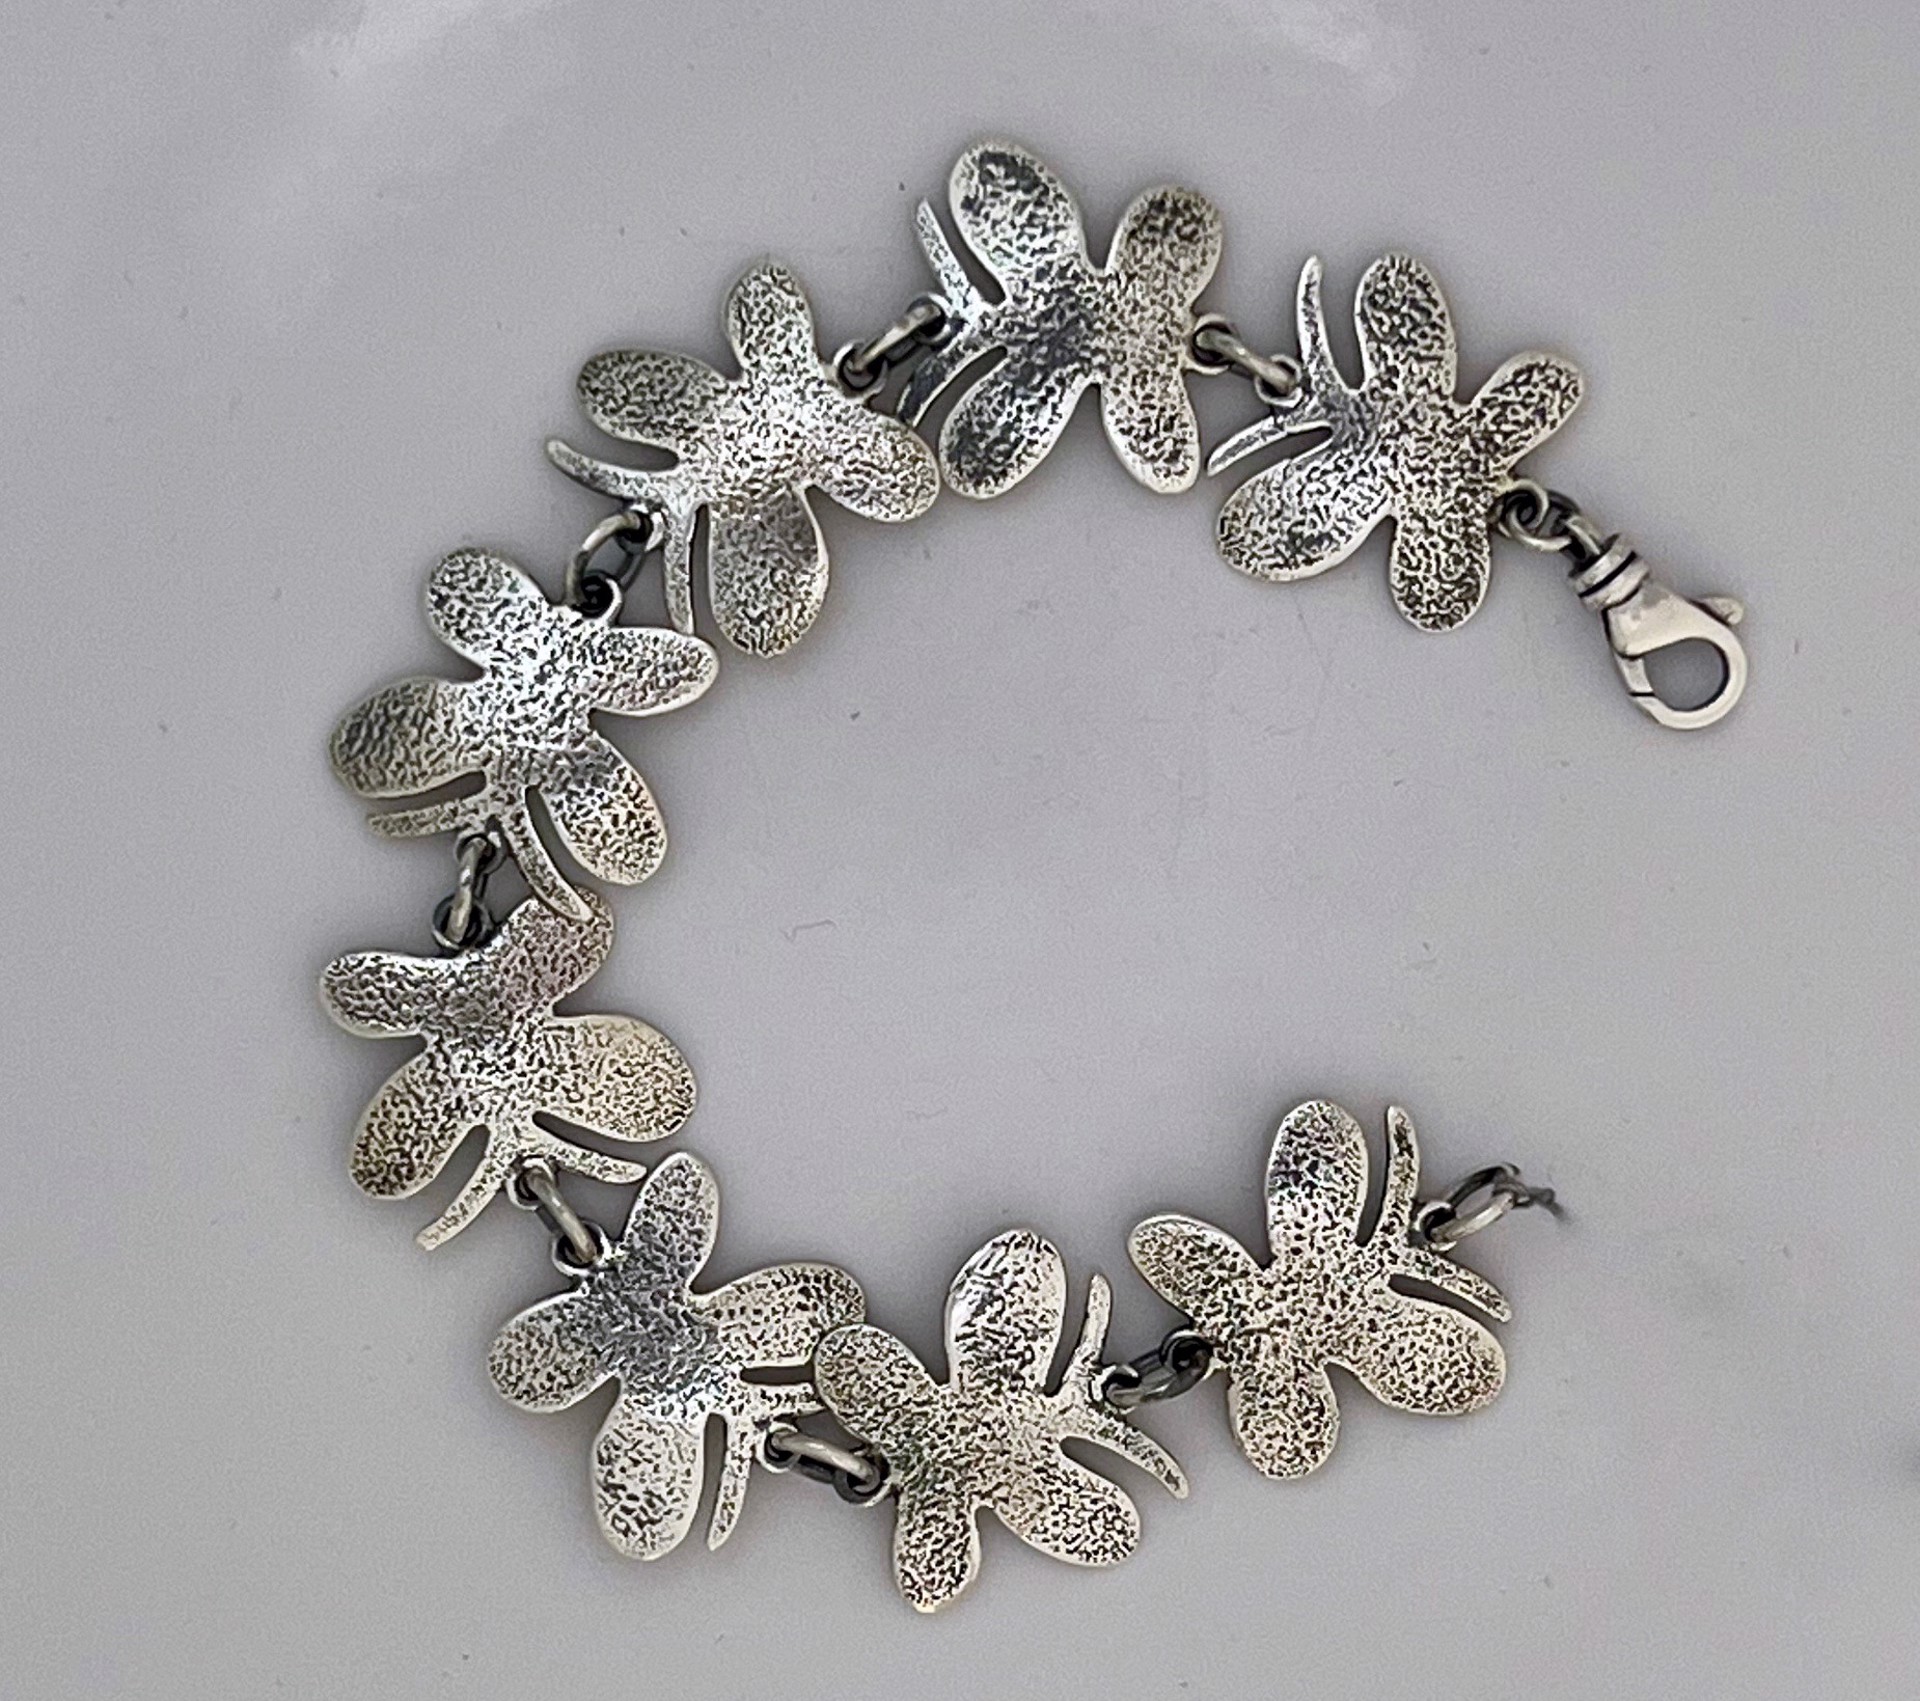 Butterfly link bracelet by Melanie Yazzie